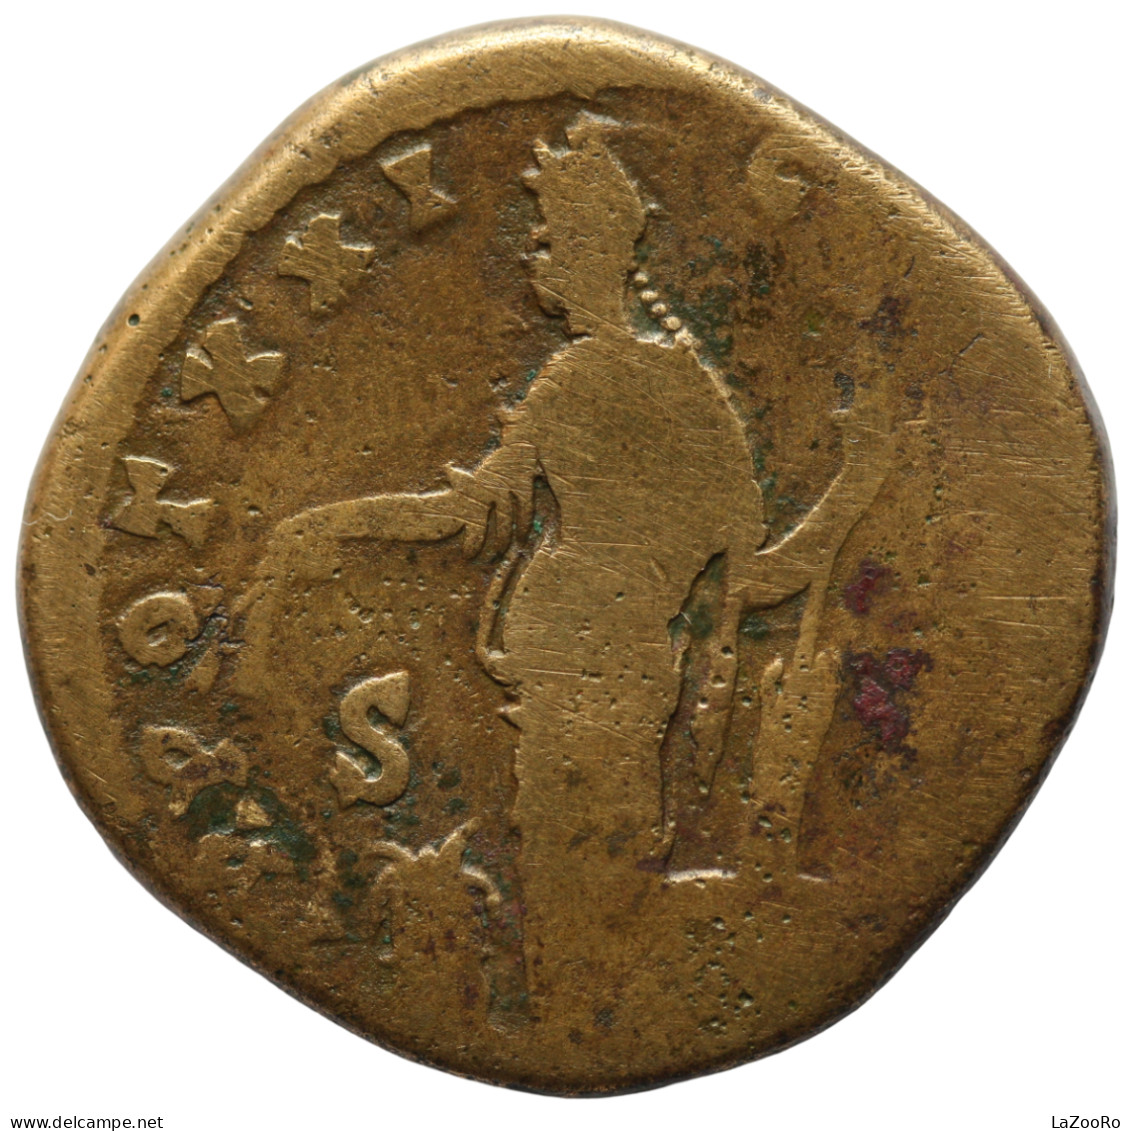 LaZooRo: Roman Empire - AE Sestertius Of Antoninus Pius (138 - 161 AD), Annona - Die Antoninische Dynastie (96 / 192)